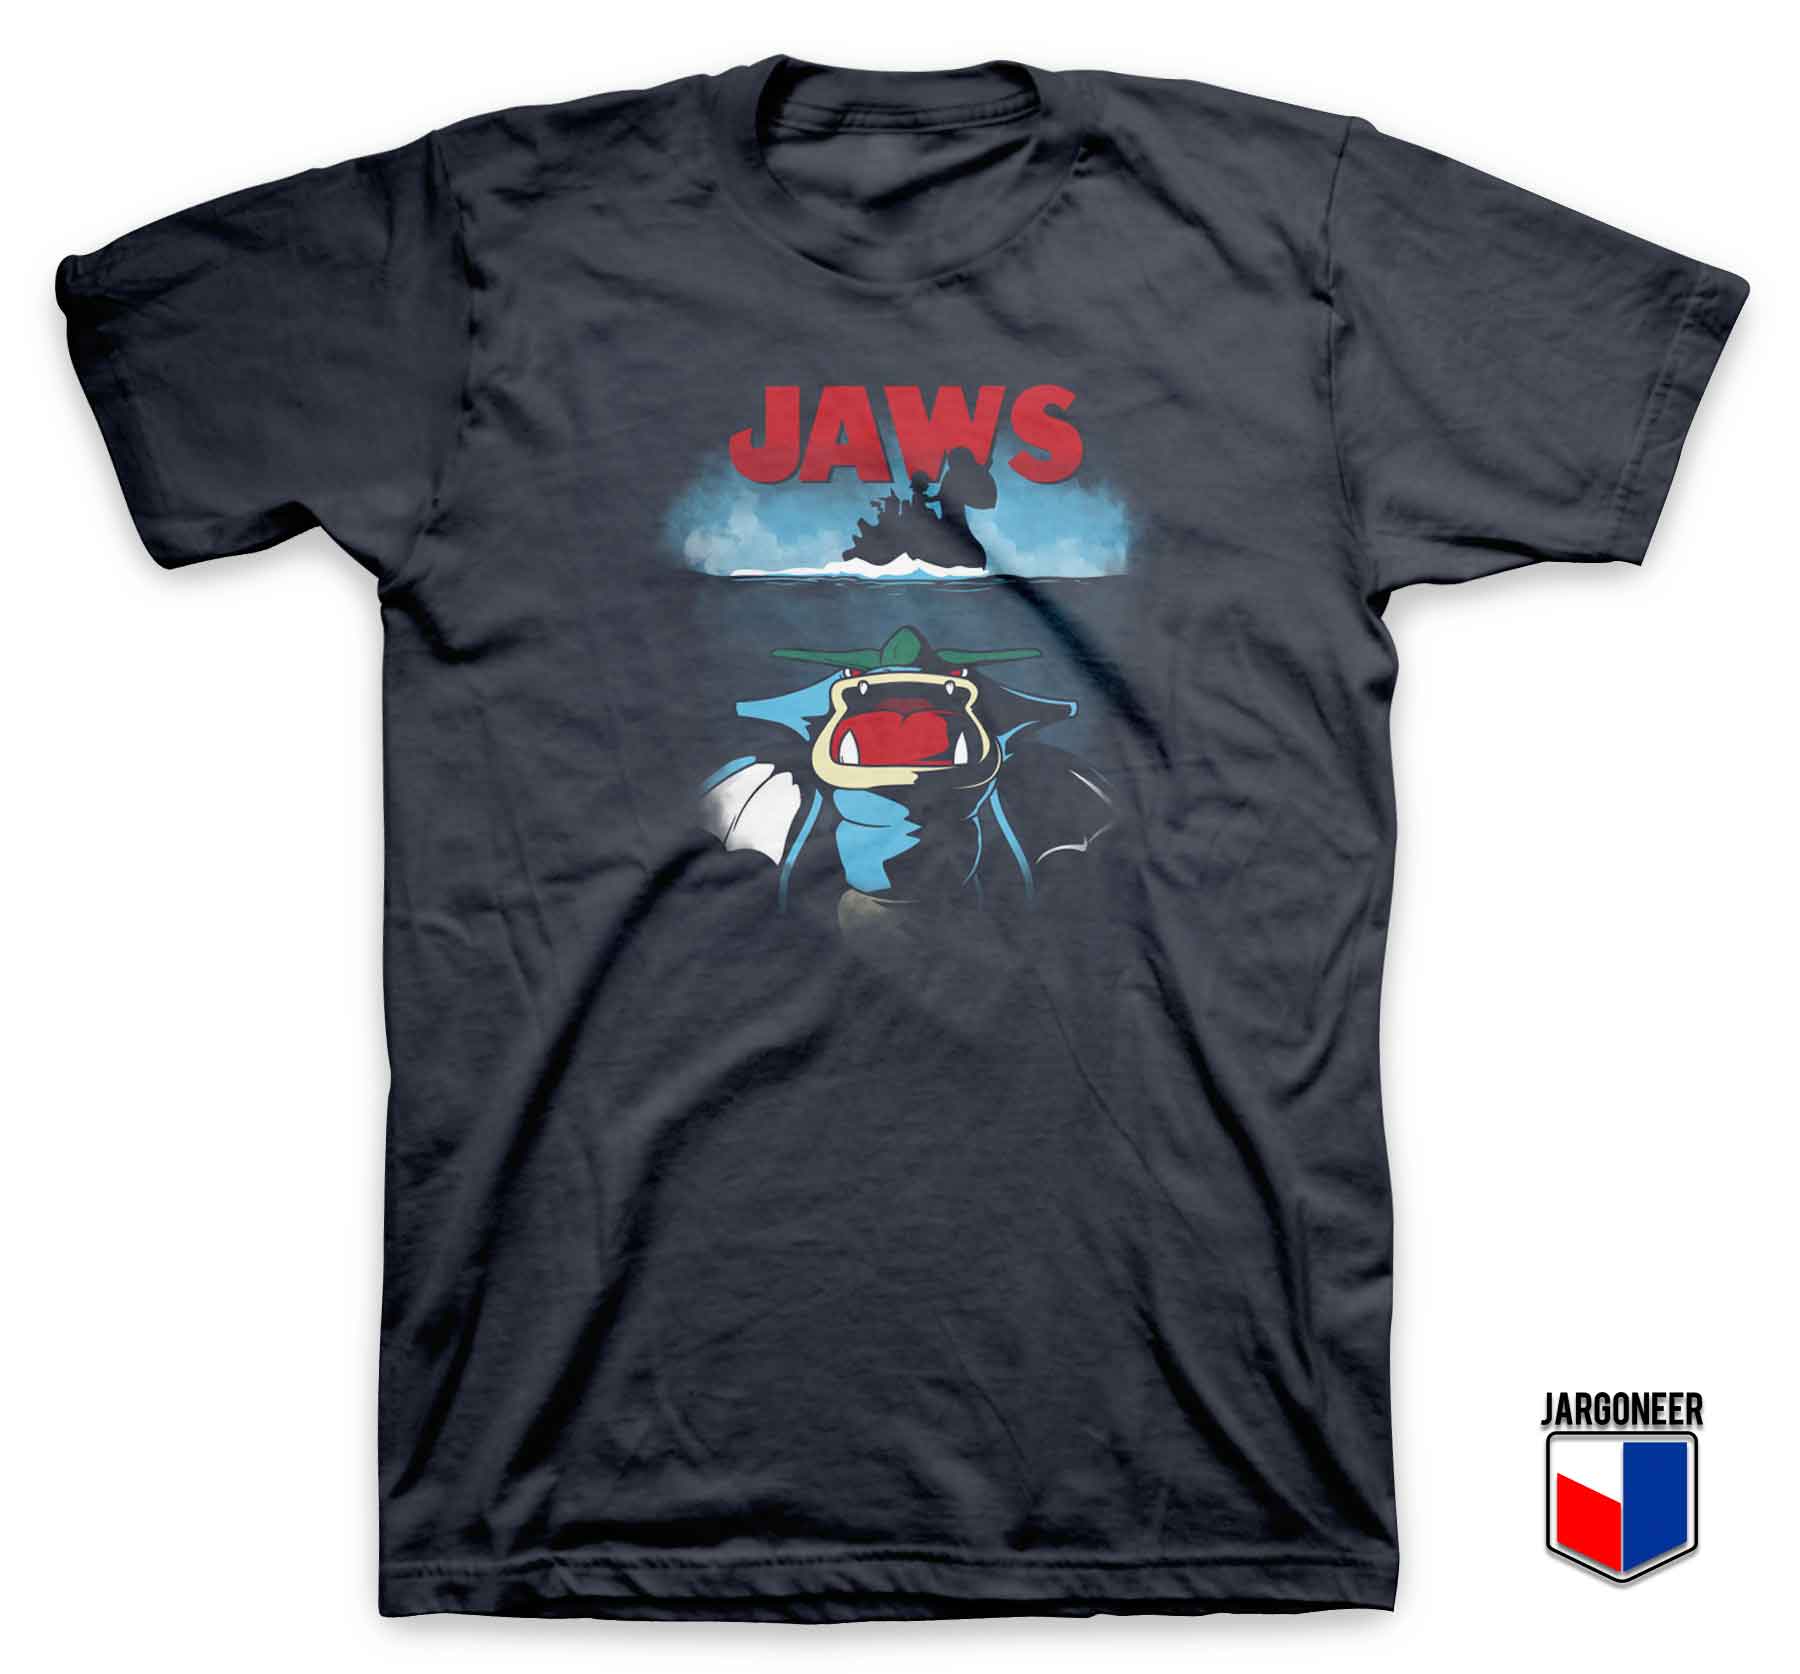 Poke Jaws - Shop Unique Graphic Cool Shirt Designs